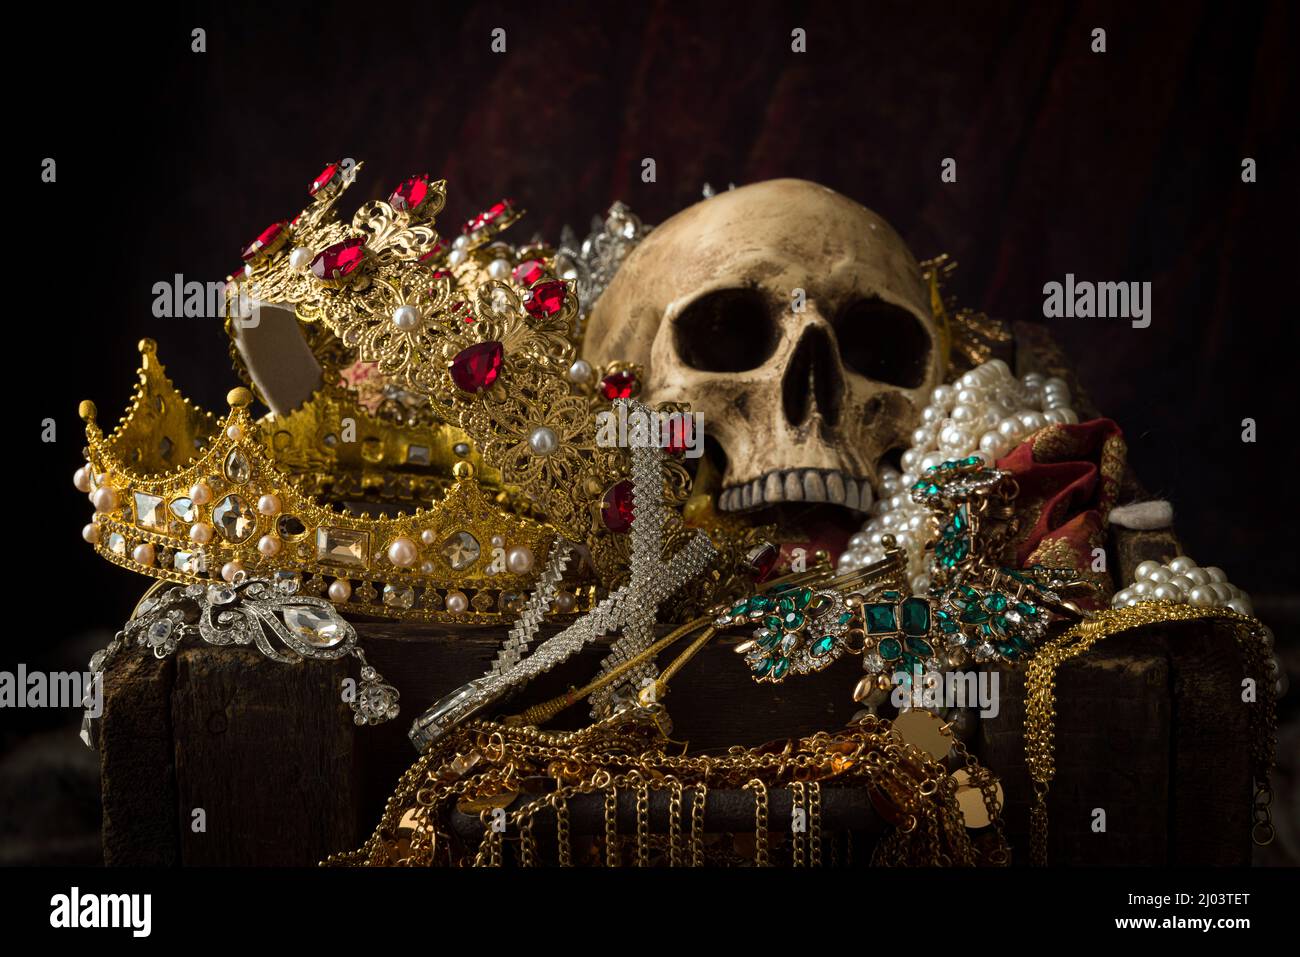 Romantisches Bild einer Schatzkiste voller Schmuck, Edelsteinen und goldenen Königskronen Stockfoto